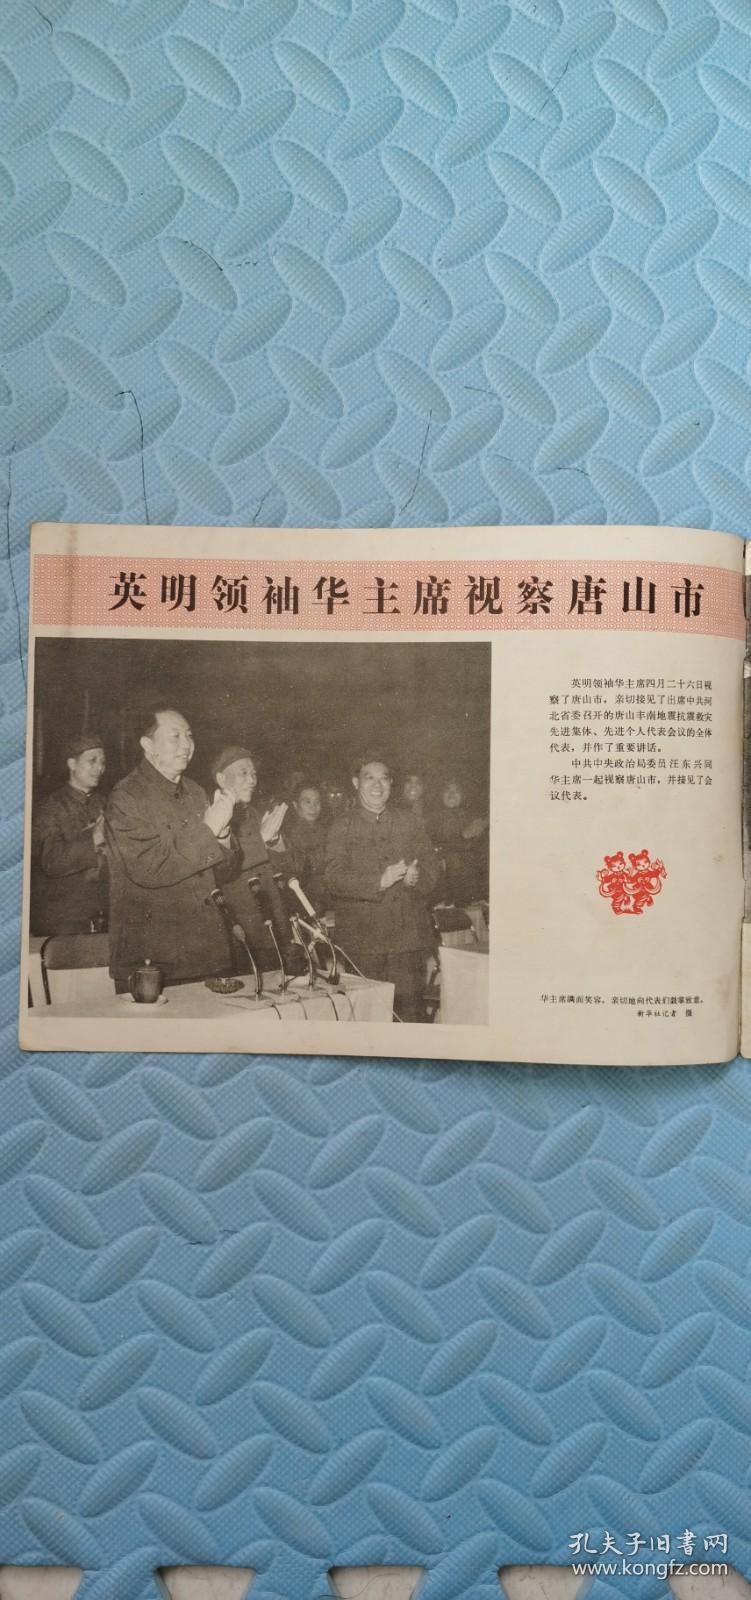 河北工农兵画刊1977